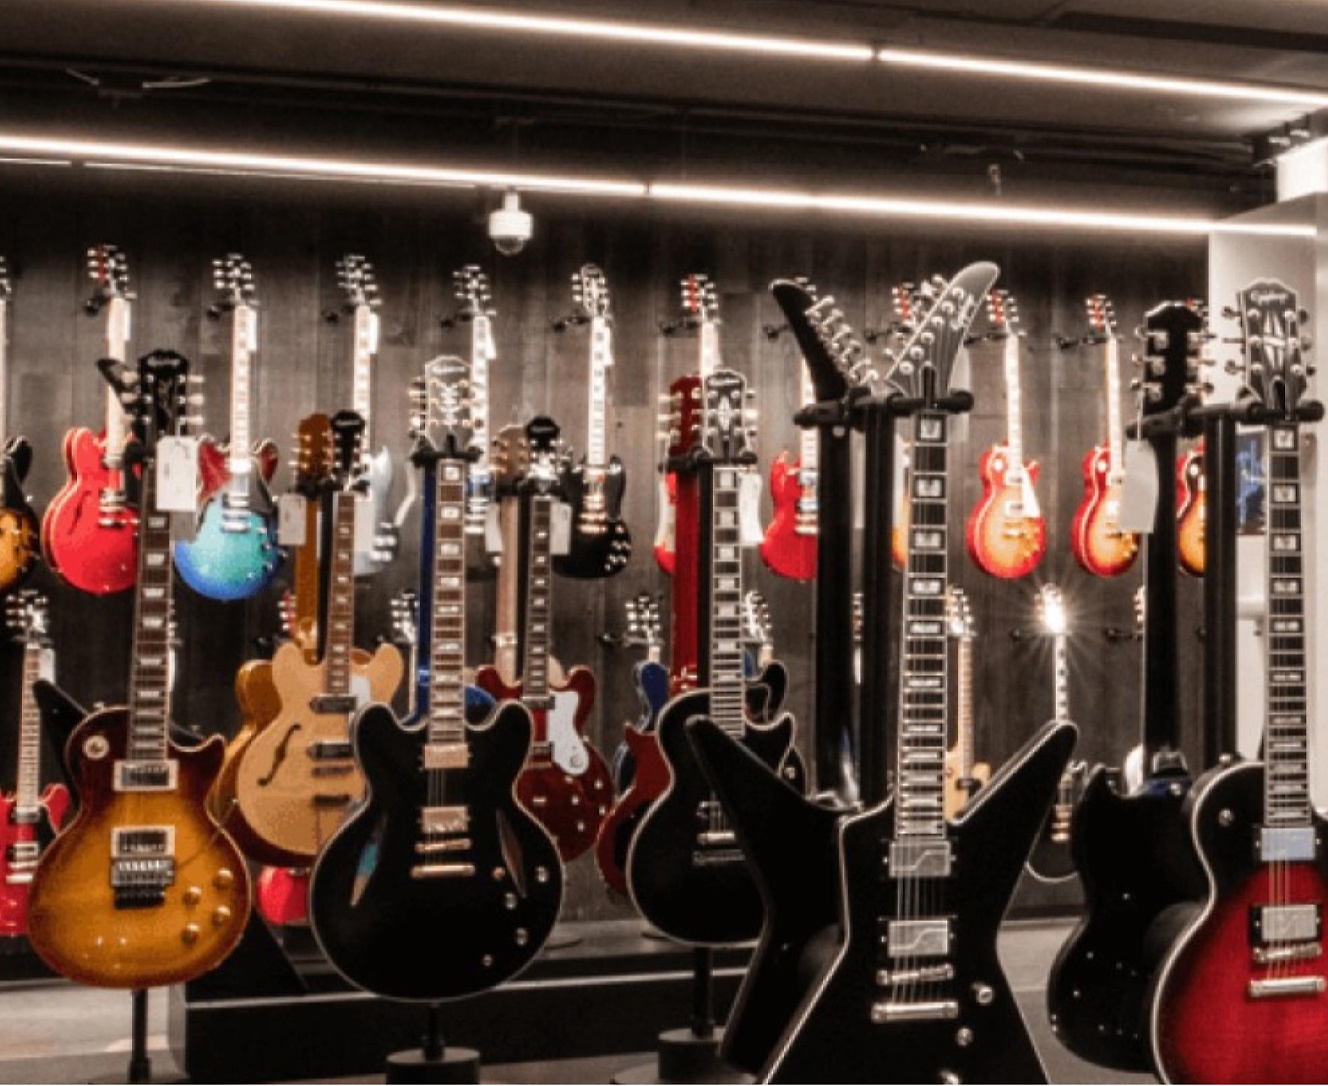 Viele Gitarren sind in einem Geschäft ausgestellt.